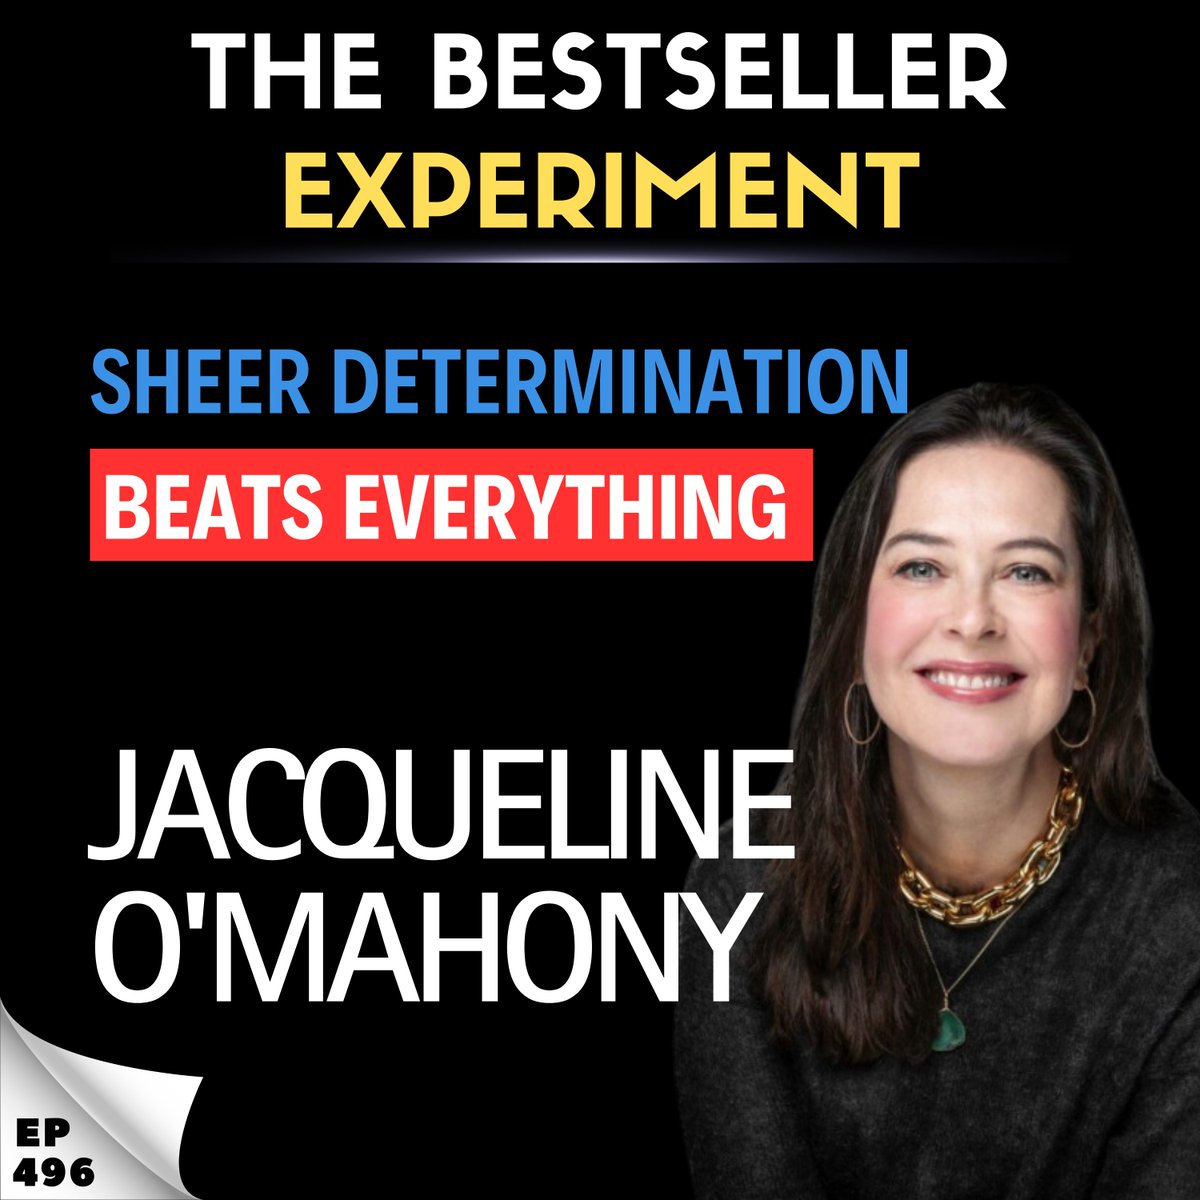 📢NEW EPISODE: Jacqueline O'Mahony - “Sheer Determination Beats Everything” @jacomahony #bxp Website 👉 bestsellerexperiment.com/ep496-jacqueli… Youtube 👉 youtube.com/watch?v=SHTIrV…